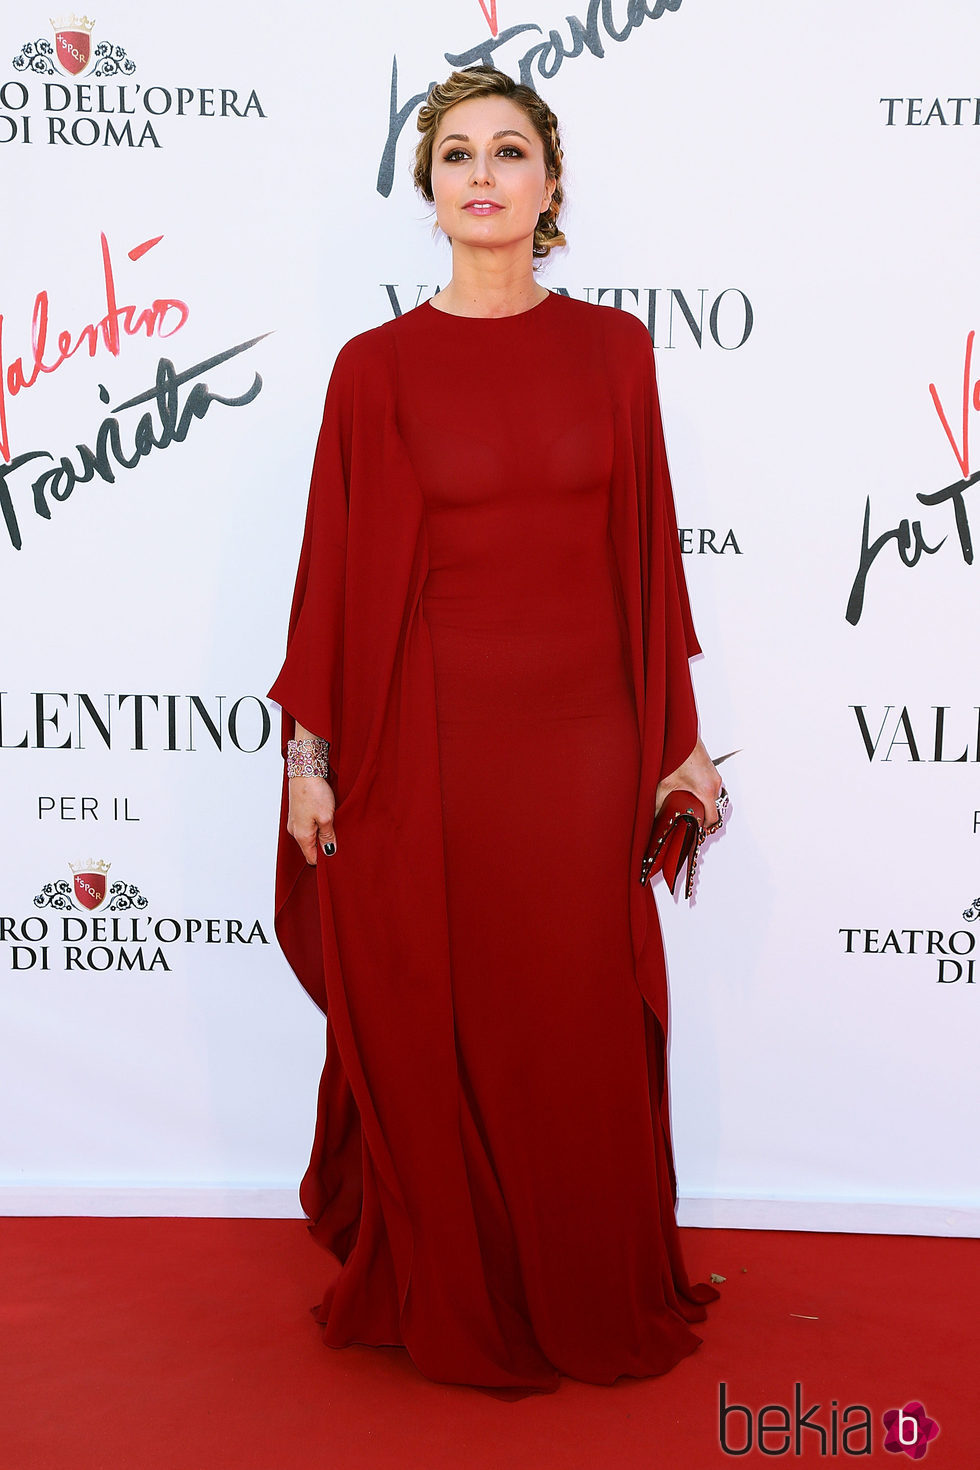 Anna Ferzetti en el estreno de 'La Traviata'  en Roma